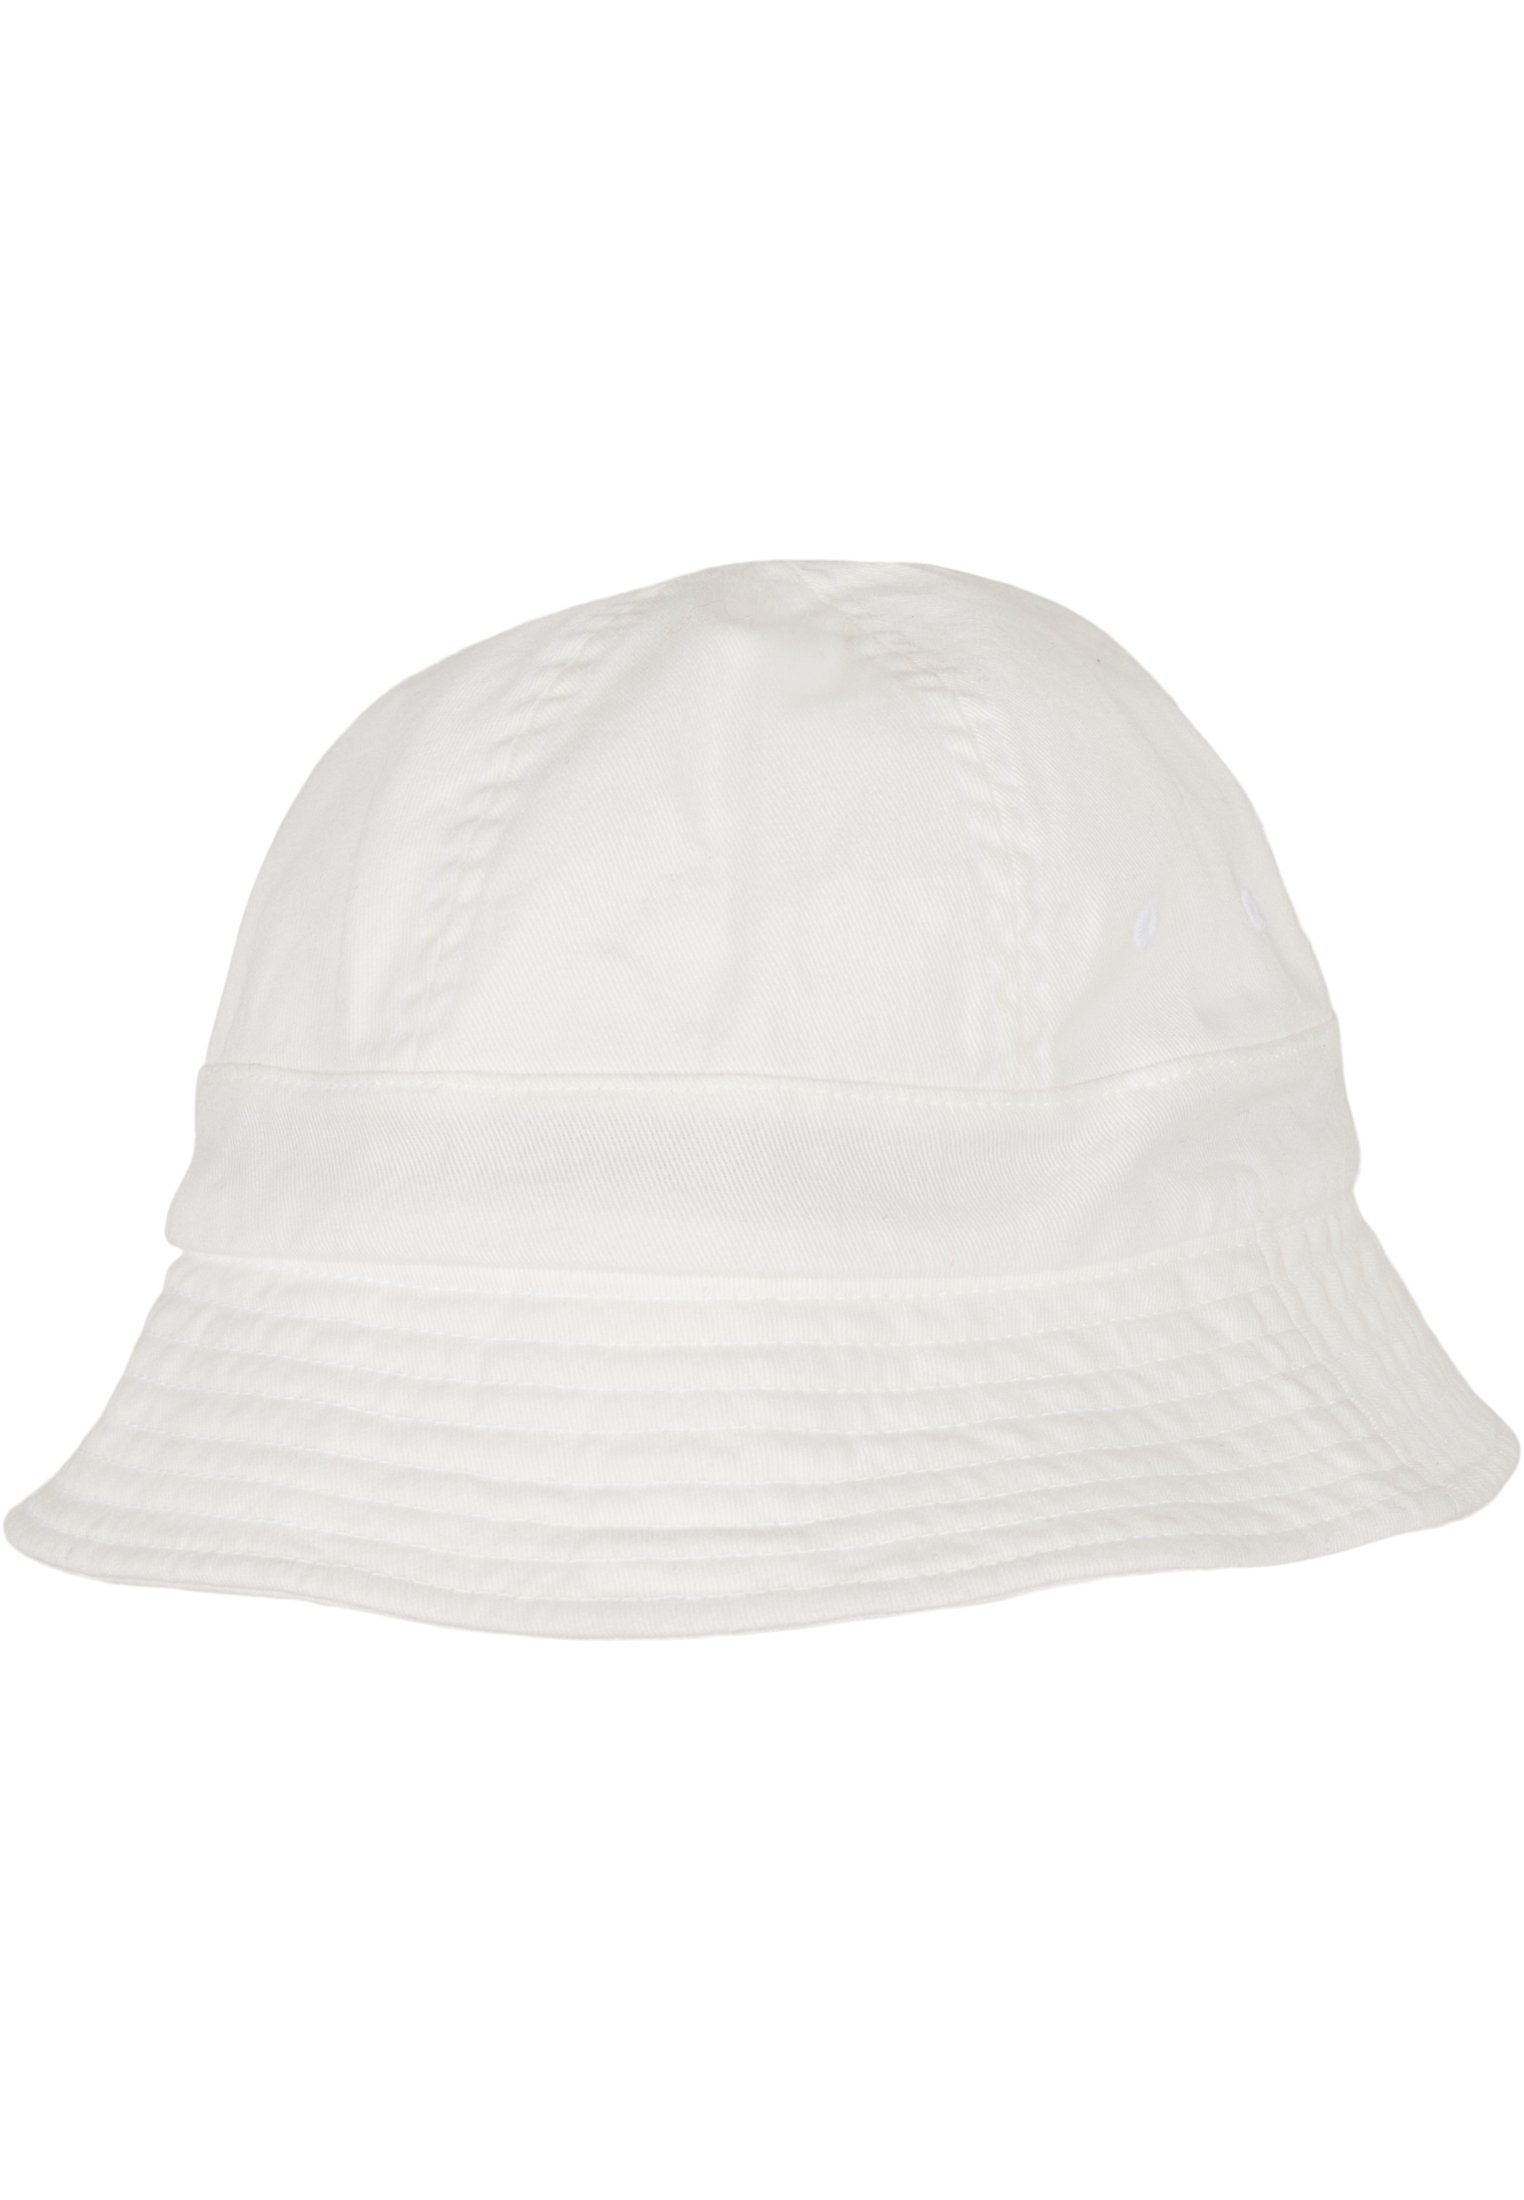 Flexfit Flex Cap Accessoires Eco white Tennis Hat Washing Notop Flexfit